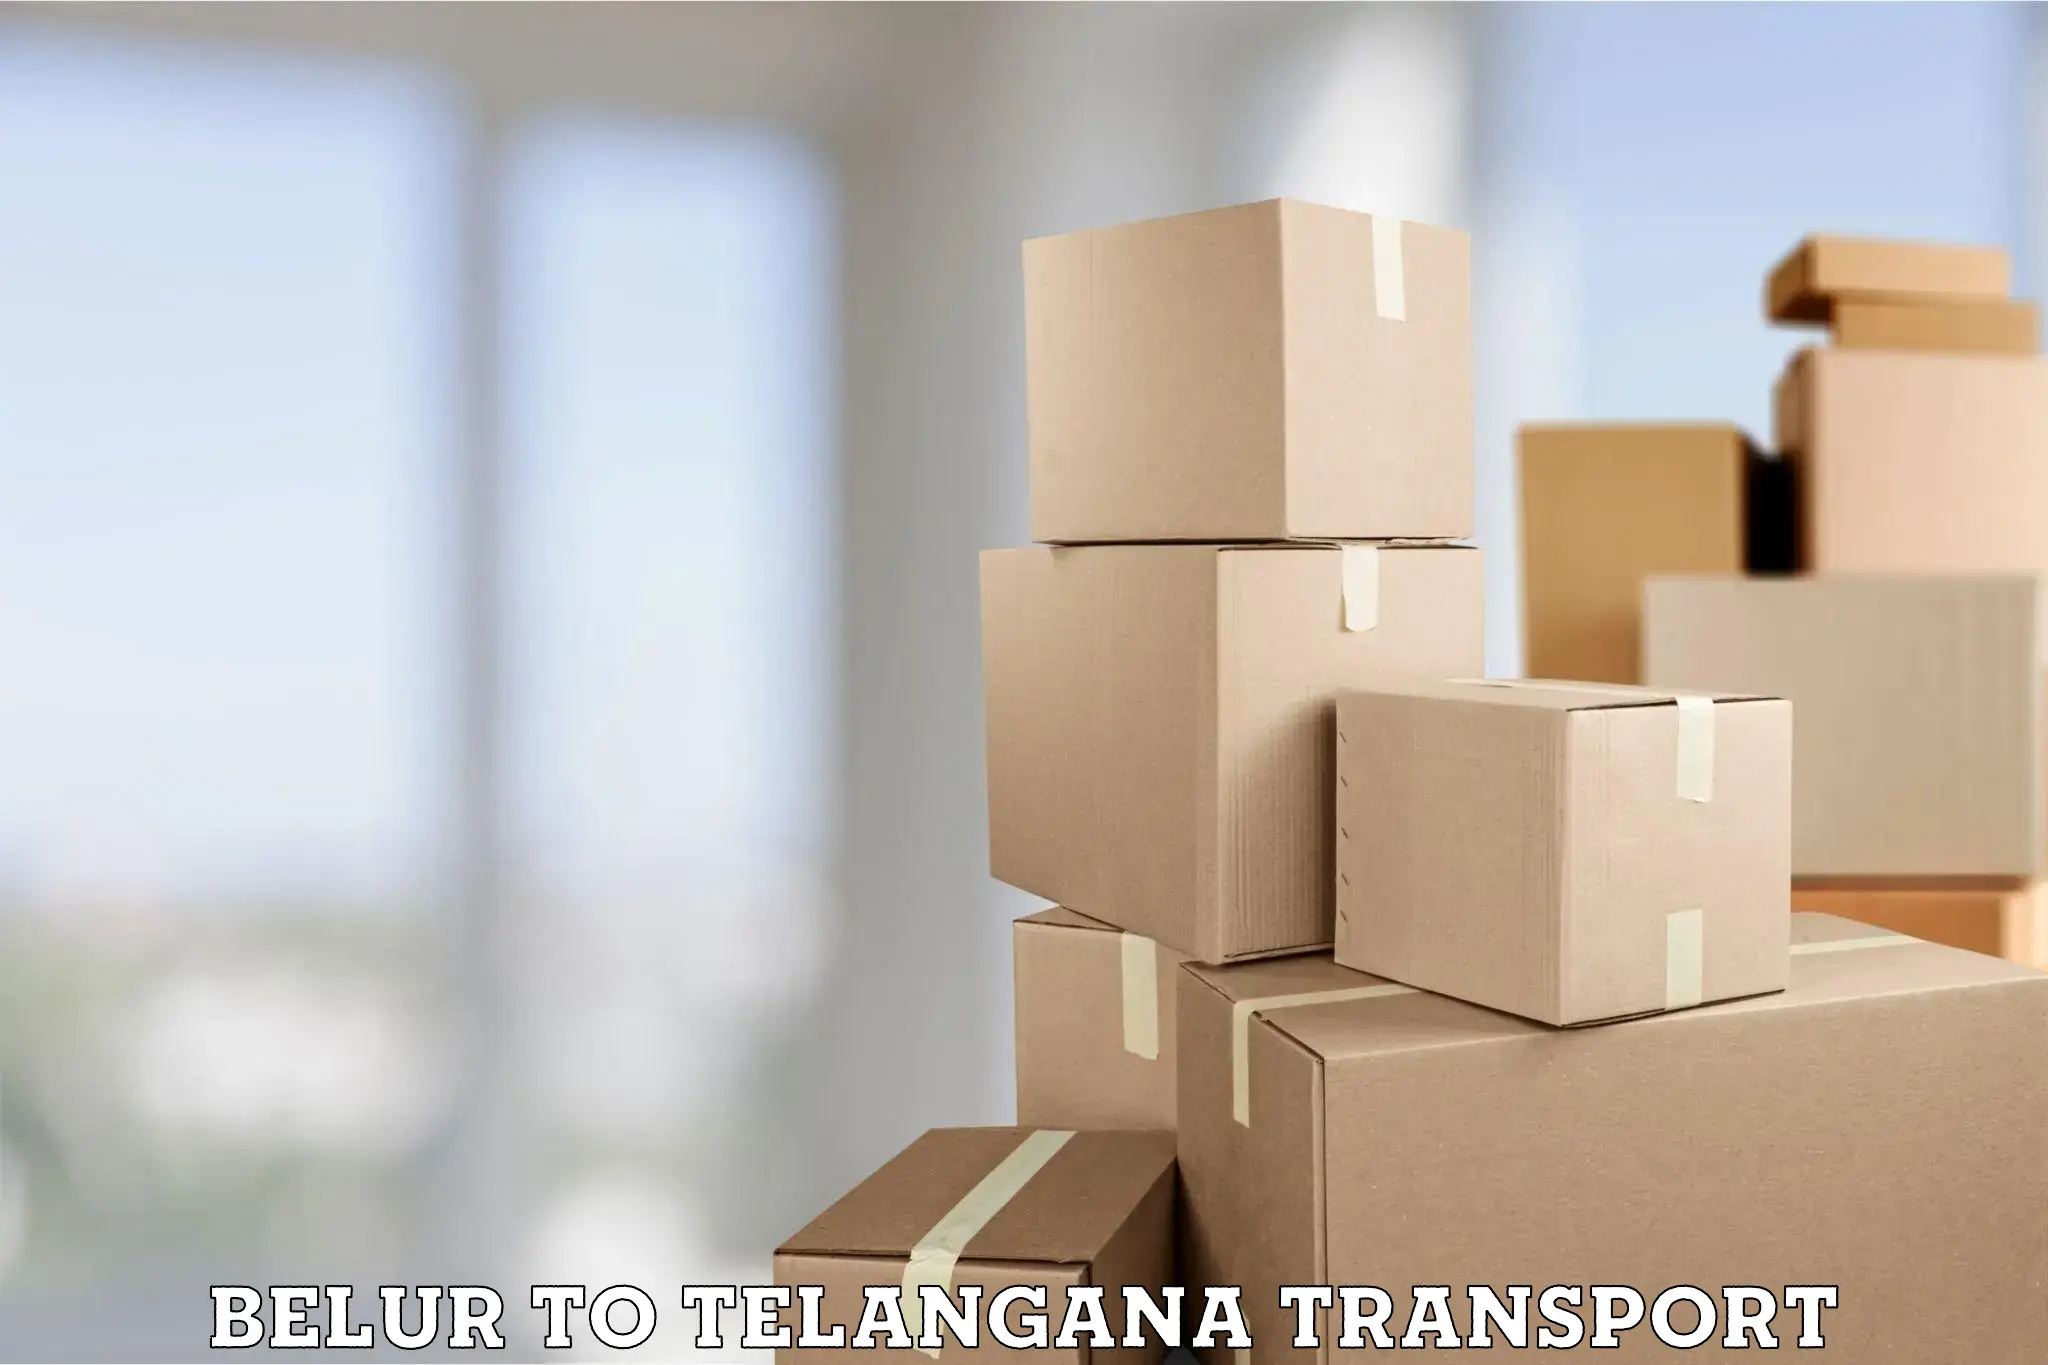 Shipping partner Belur to Mudigonda